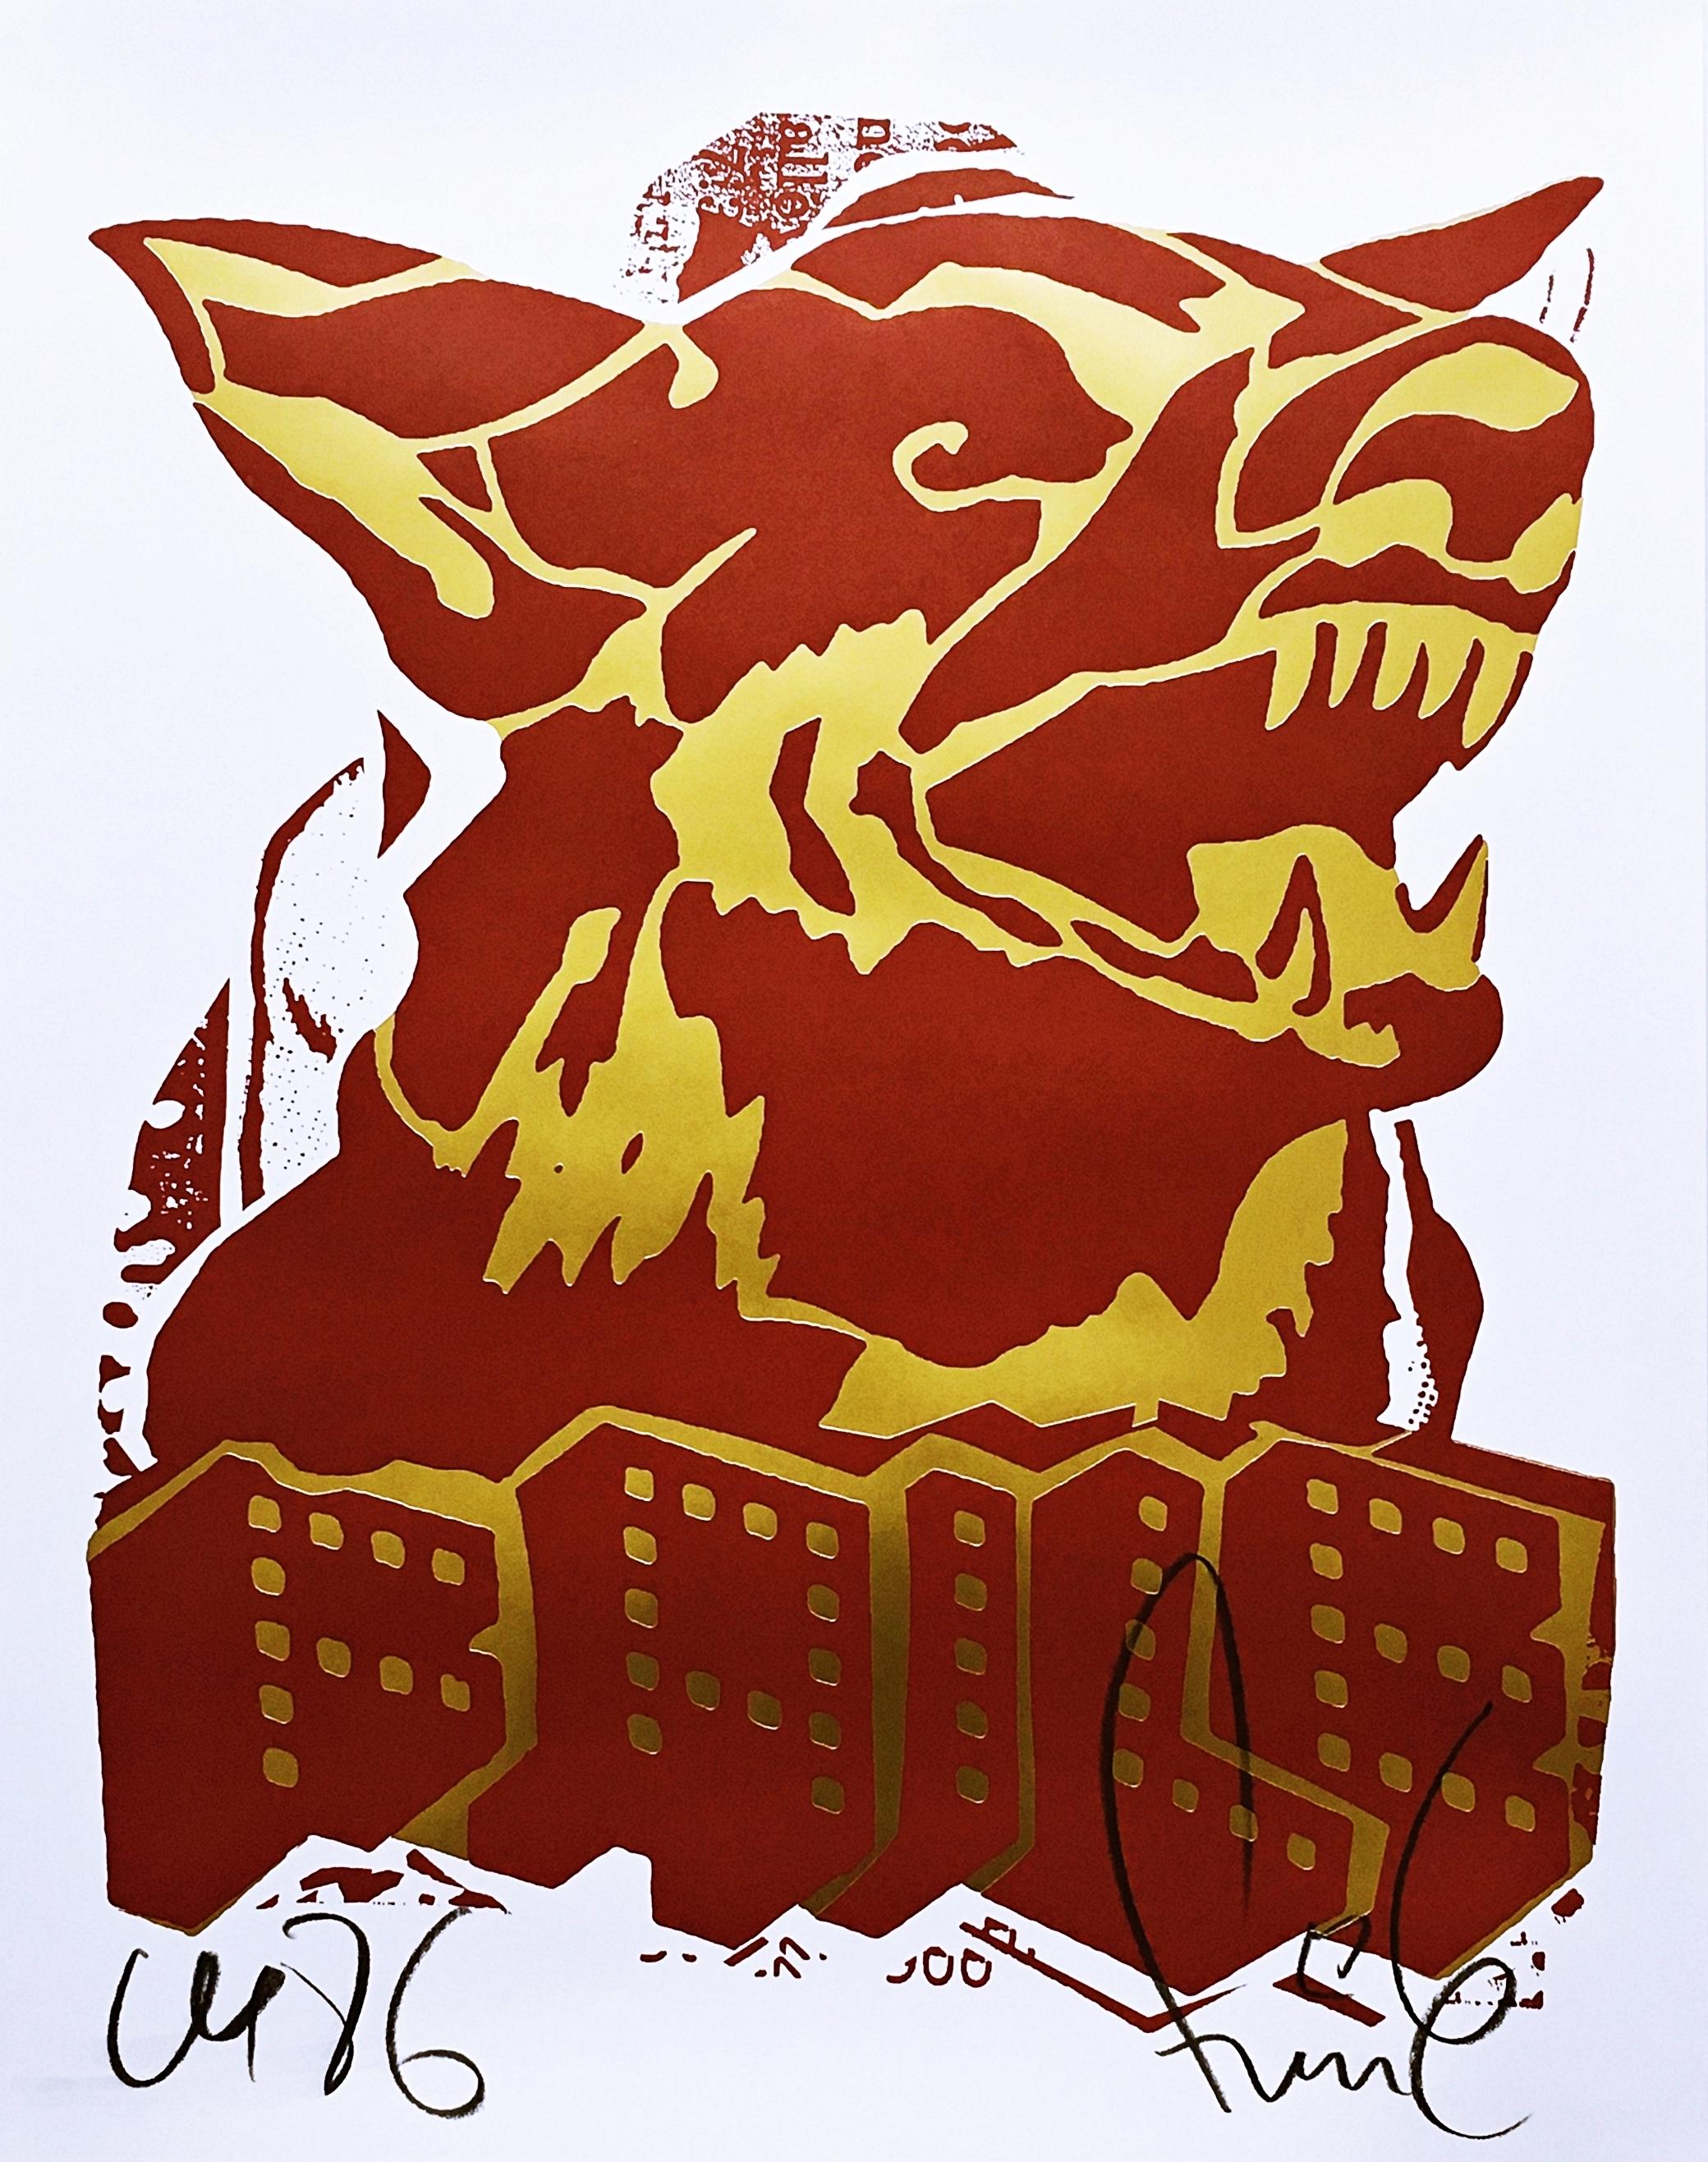 Faile Abstract Print – Red Dog (Druck in limitierter Auflage mit goldenerter Folie) von berühmten Street Art Pop Artists 